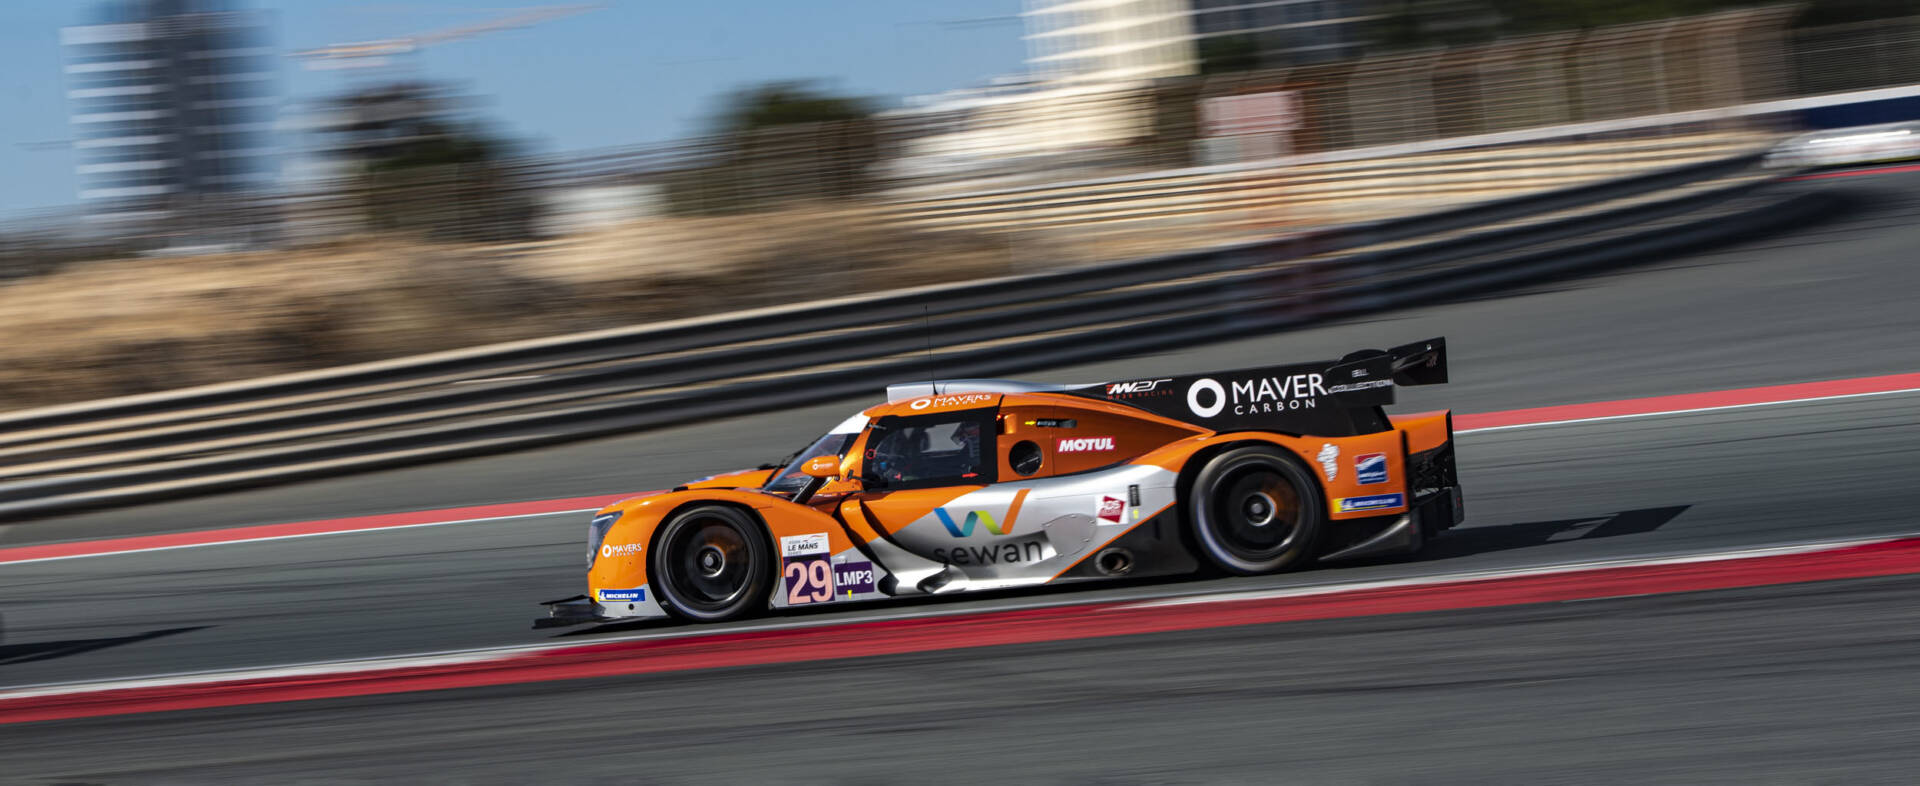 Ligier JS P320 Dubai Asian Le Mans Series win MV2S Racing